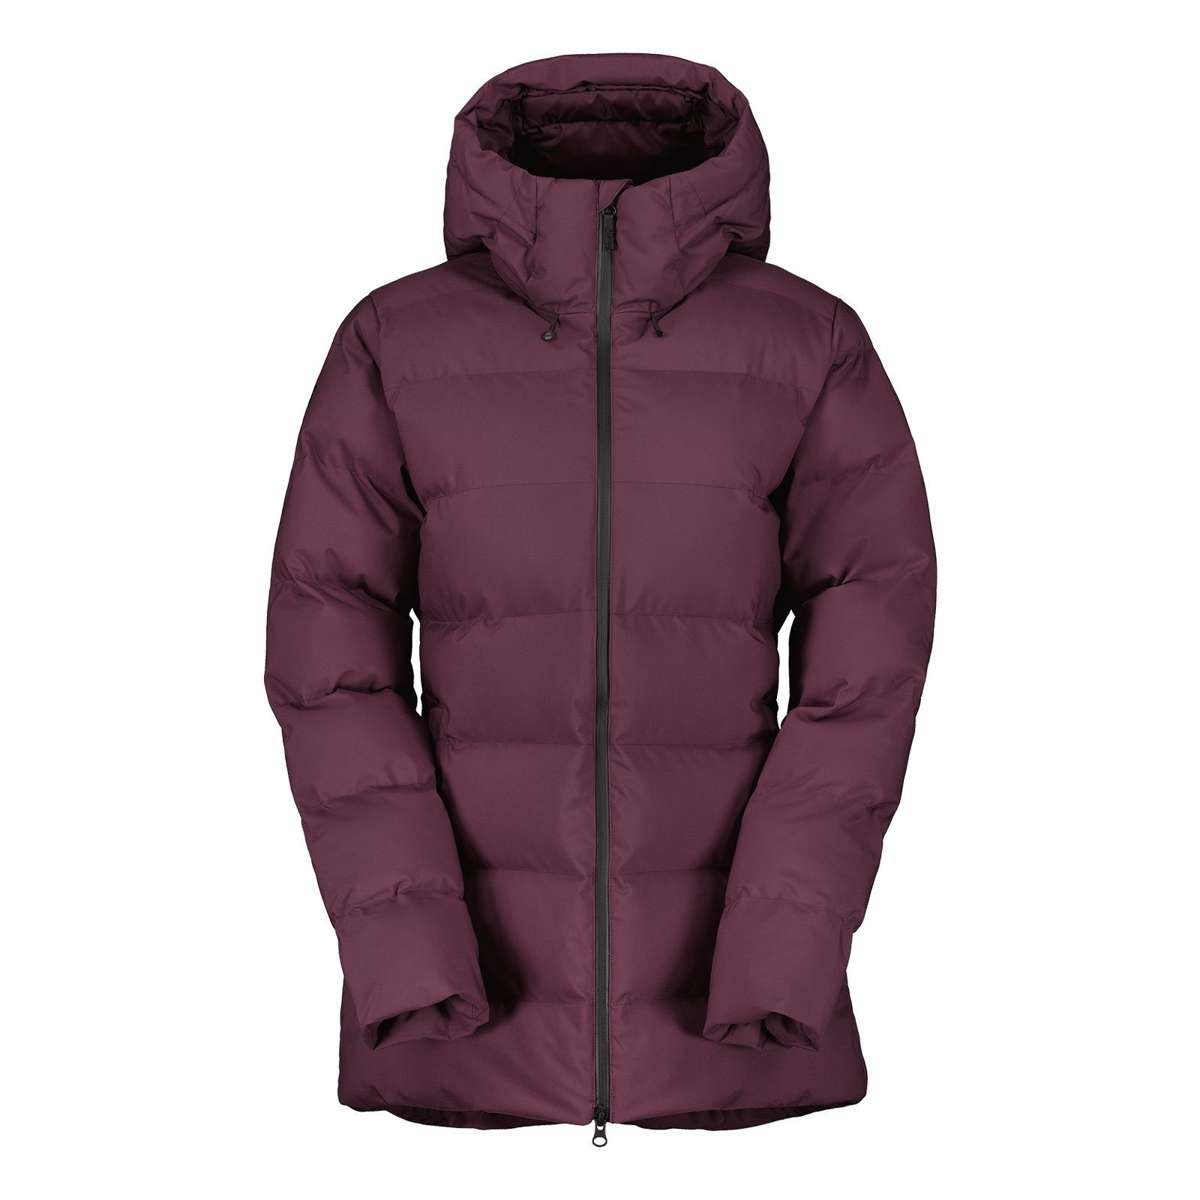 Зимняя куртка Tech Теплое пальто с карманами для утепления рук